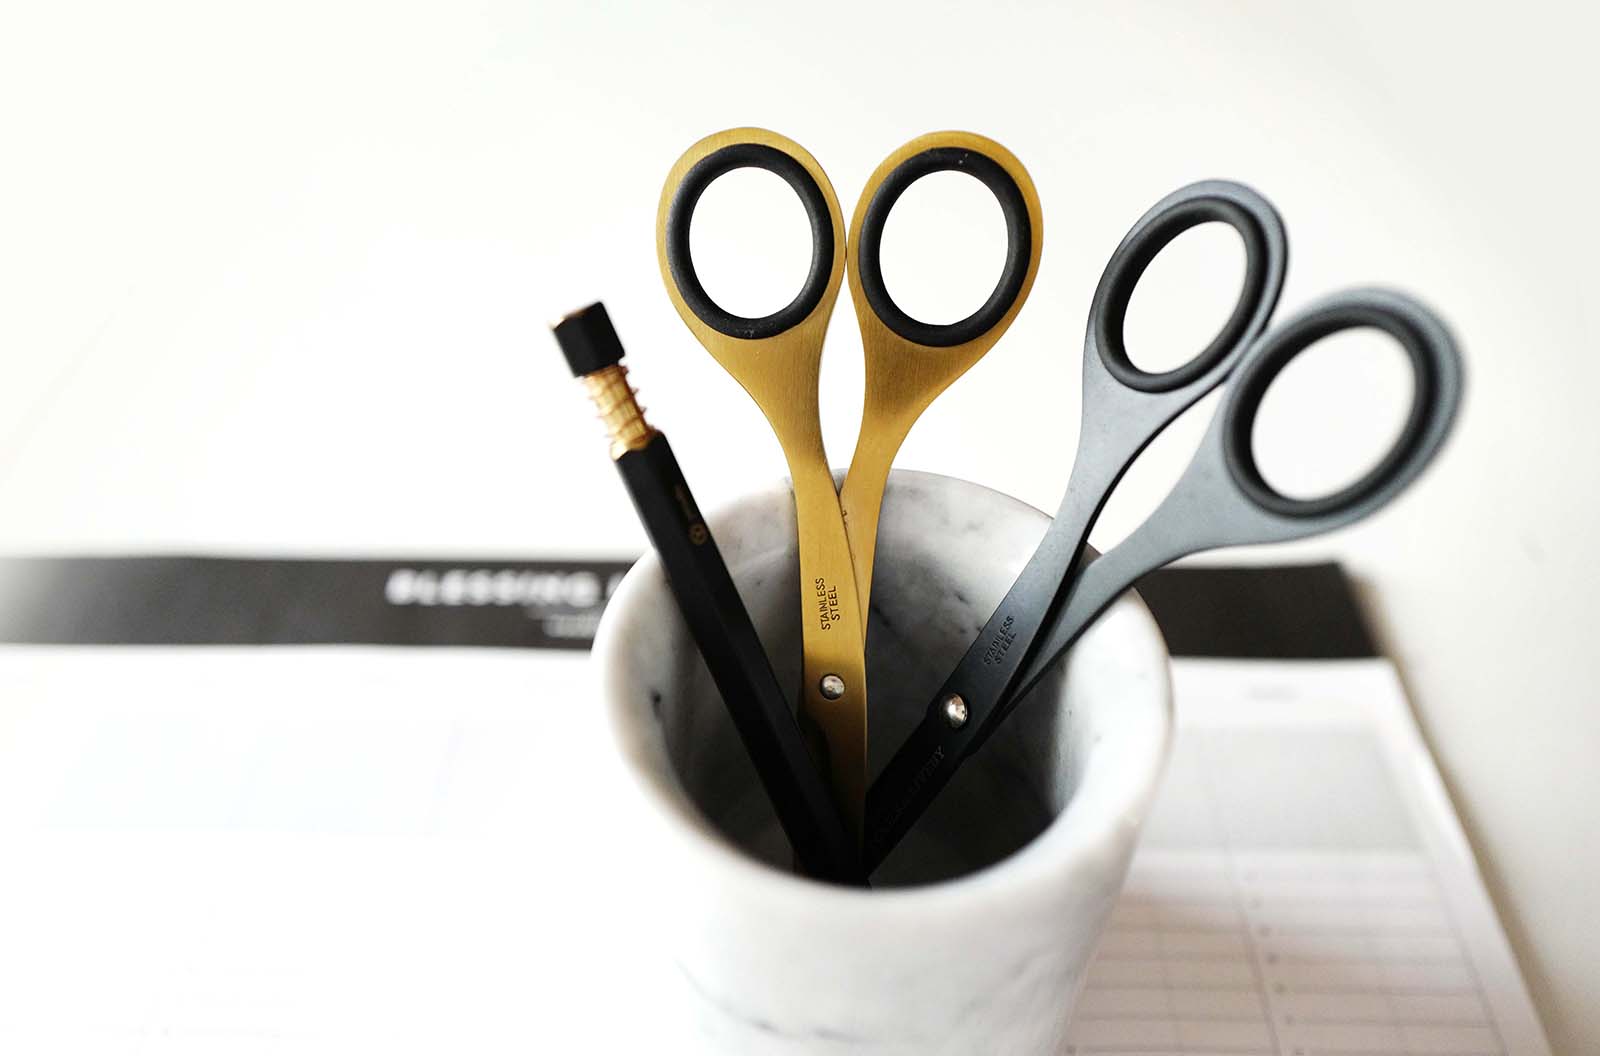 Tools to Liveby - Scissors 6.5" - Black (schaar)-Schaar-DutchMills